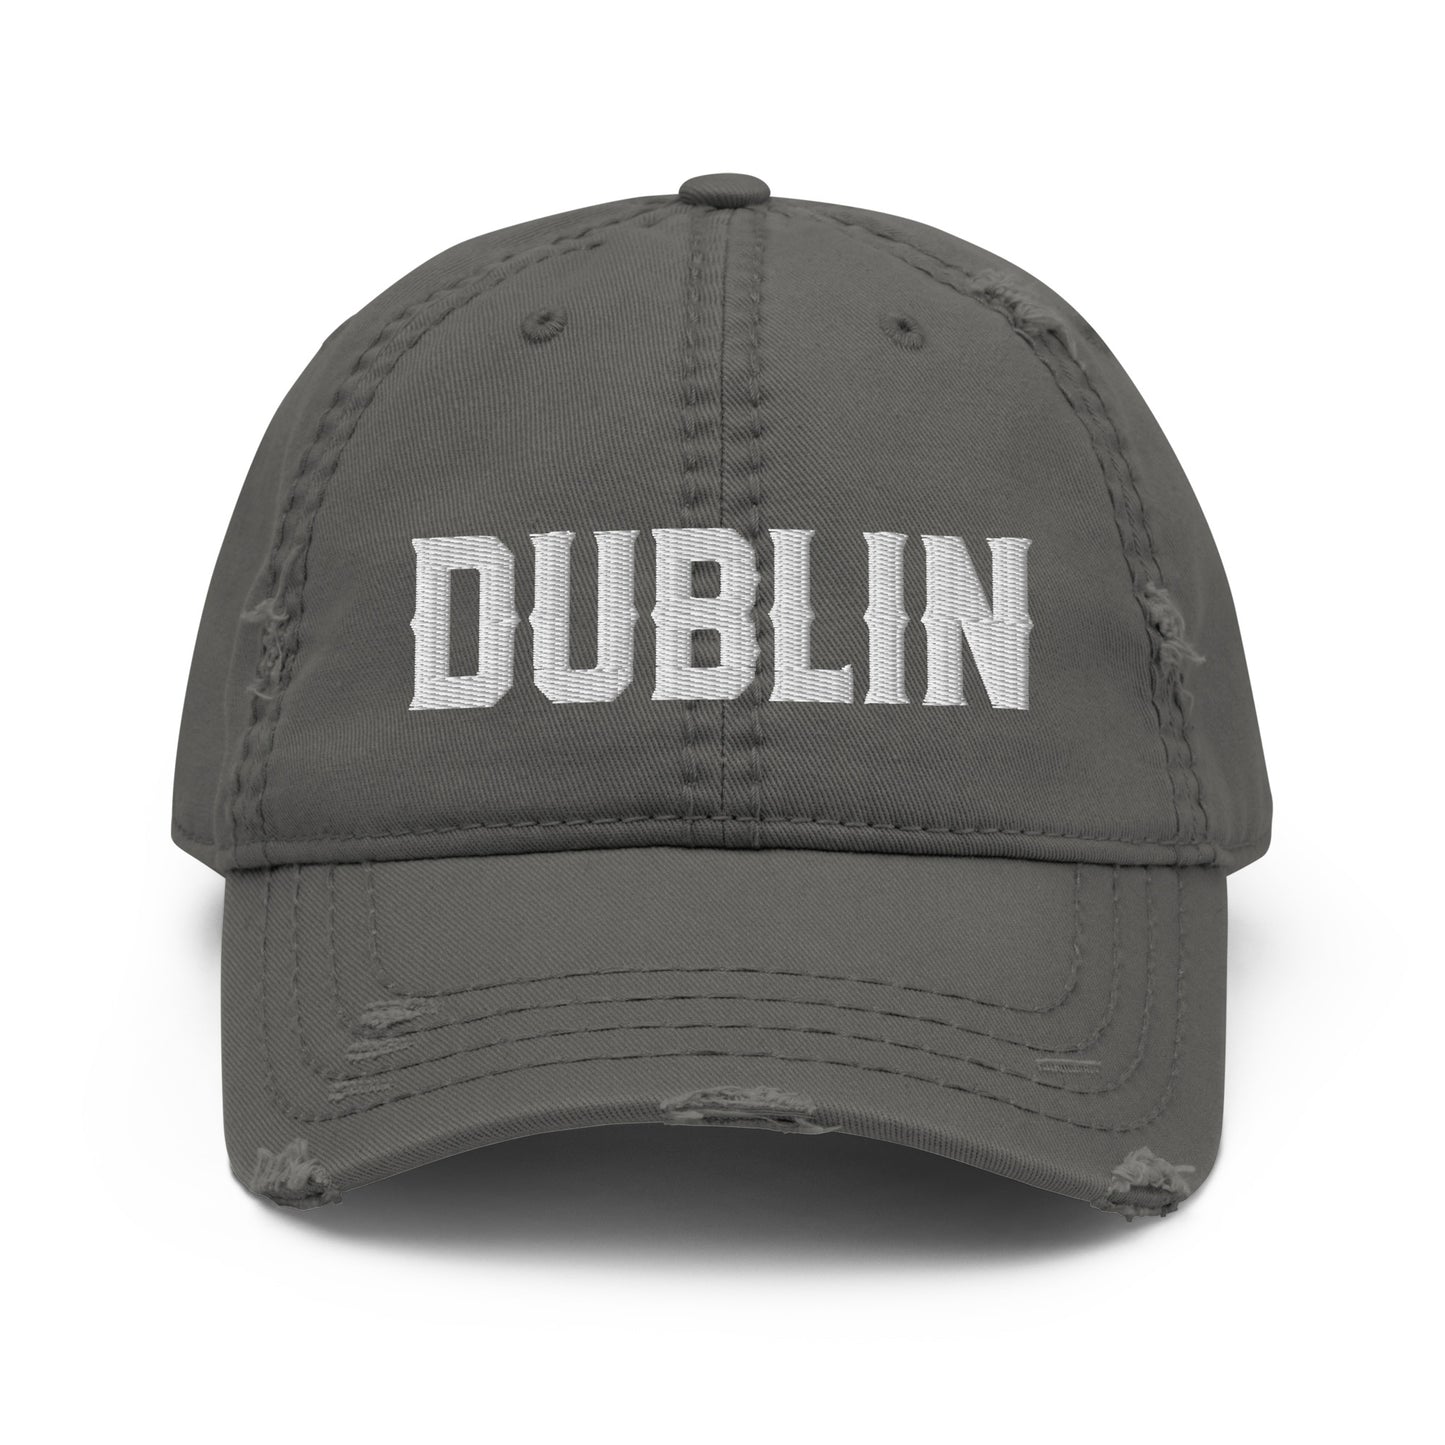 DUBLIN- Fan Favorite Distressed Dad Hat